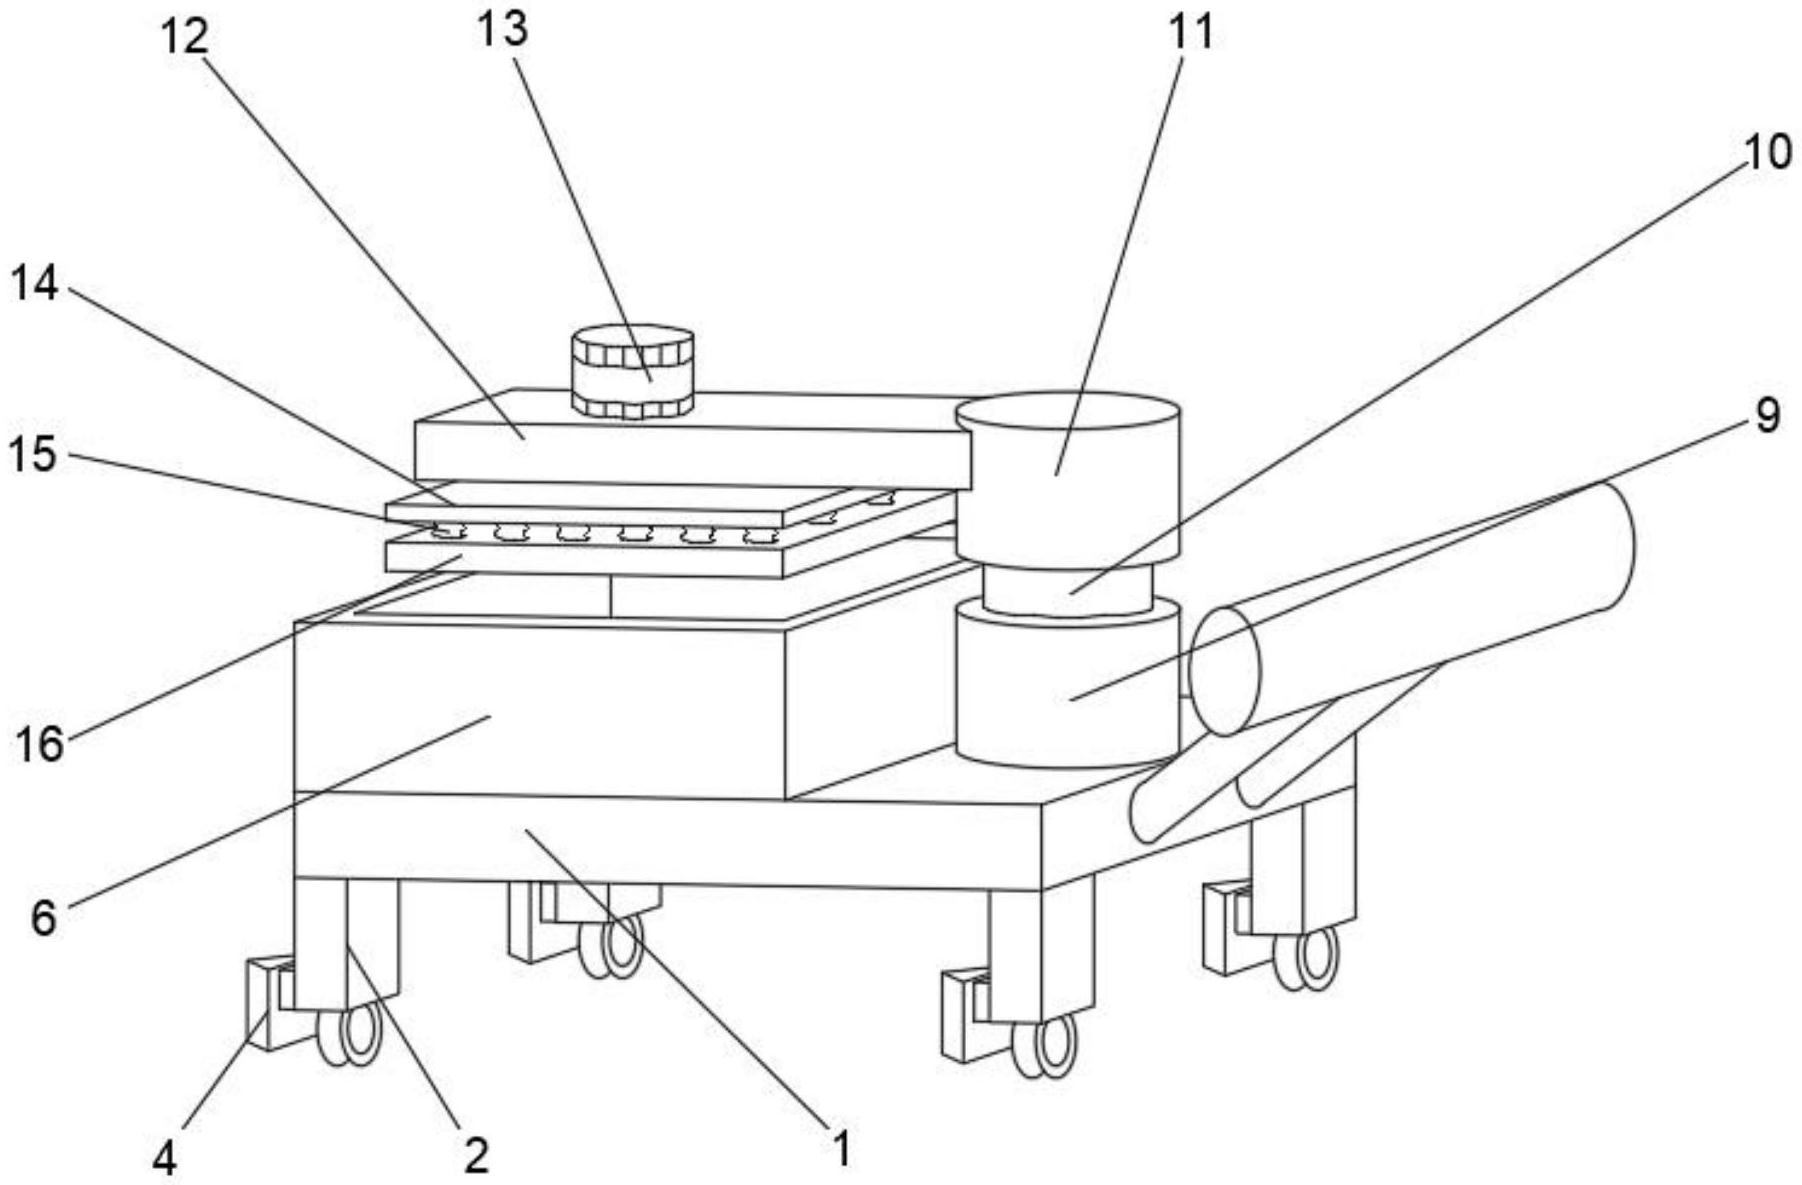 一种扶手减震机械搬运设备专利图